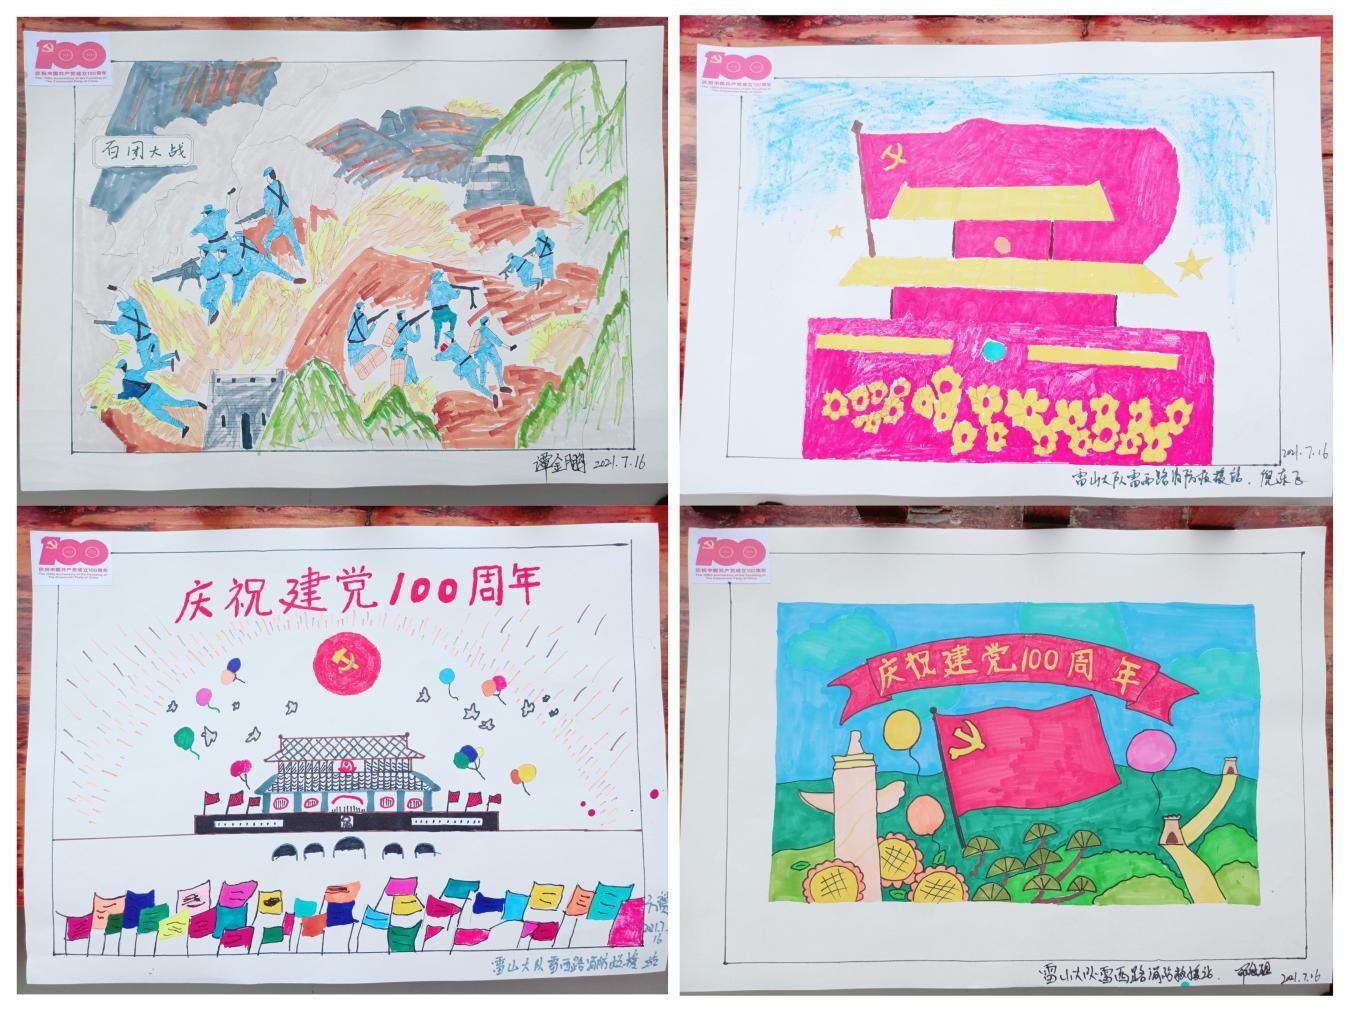 雷山县消防救援大队开展庆祝建党一百周年绘画创作活动